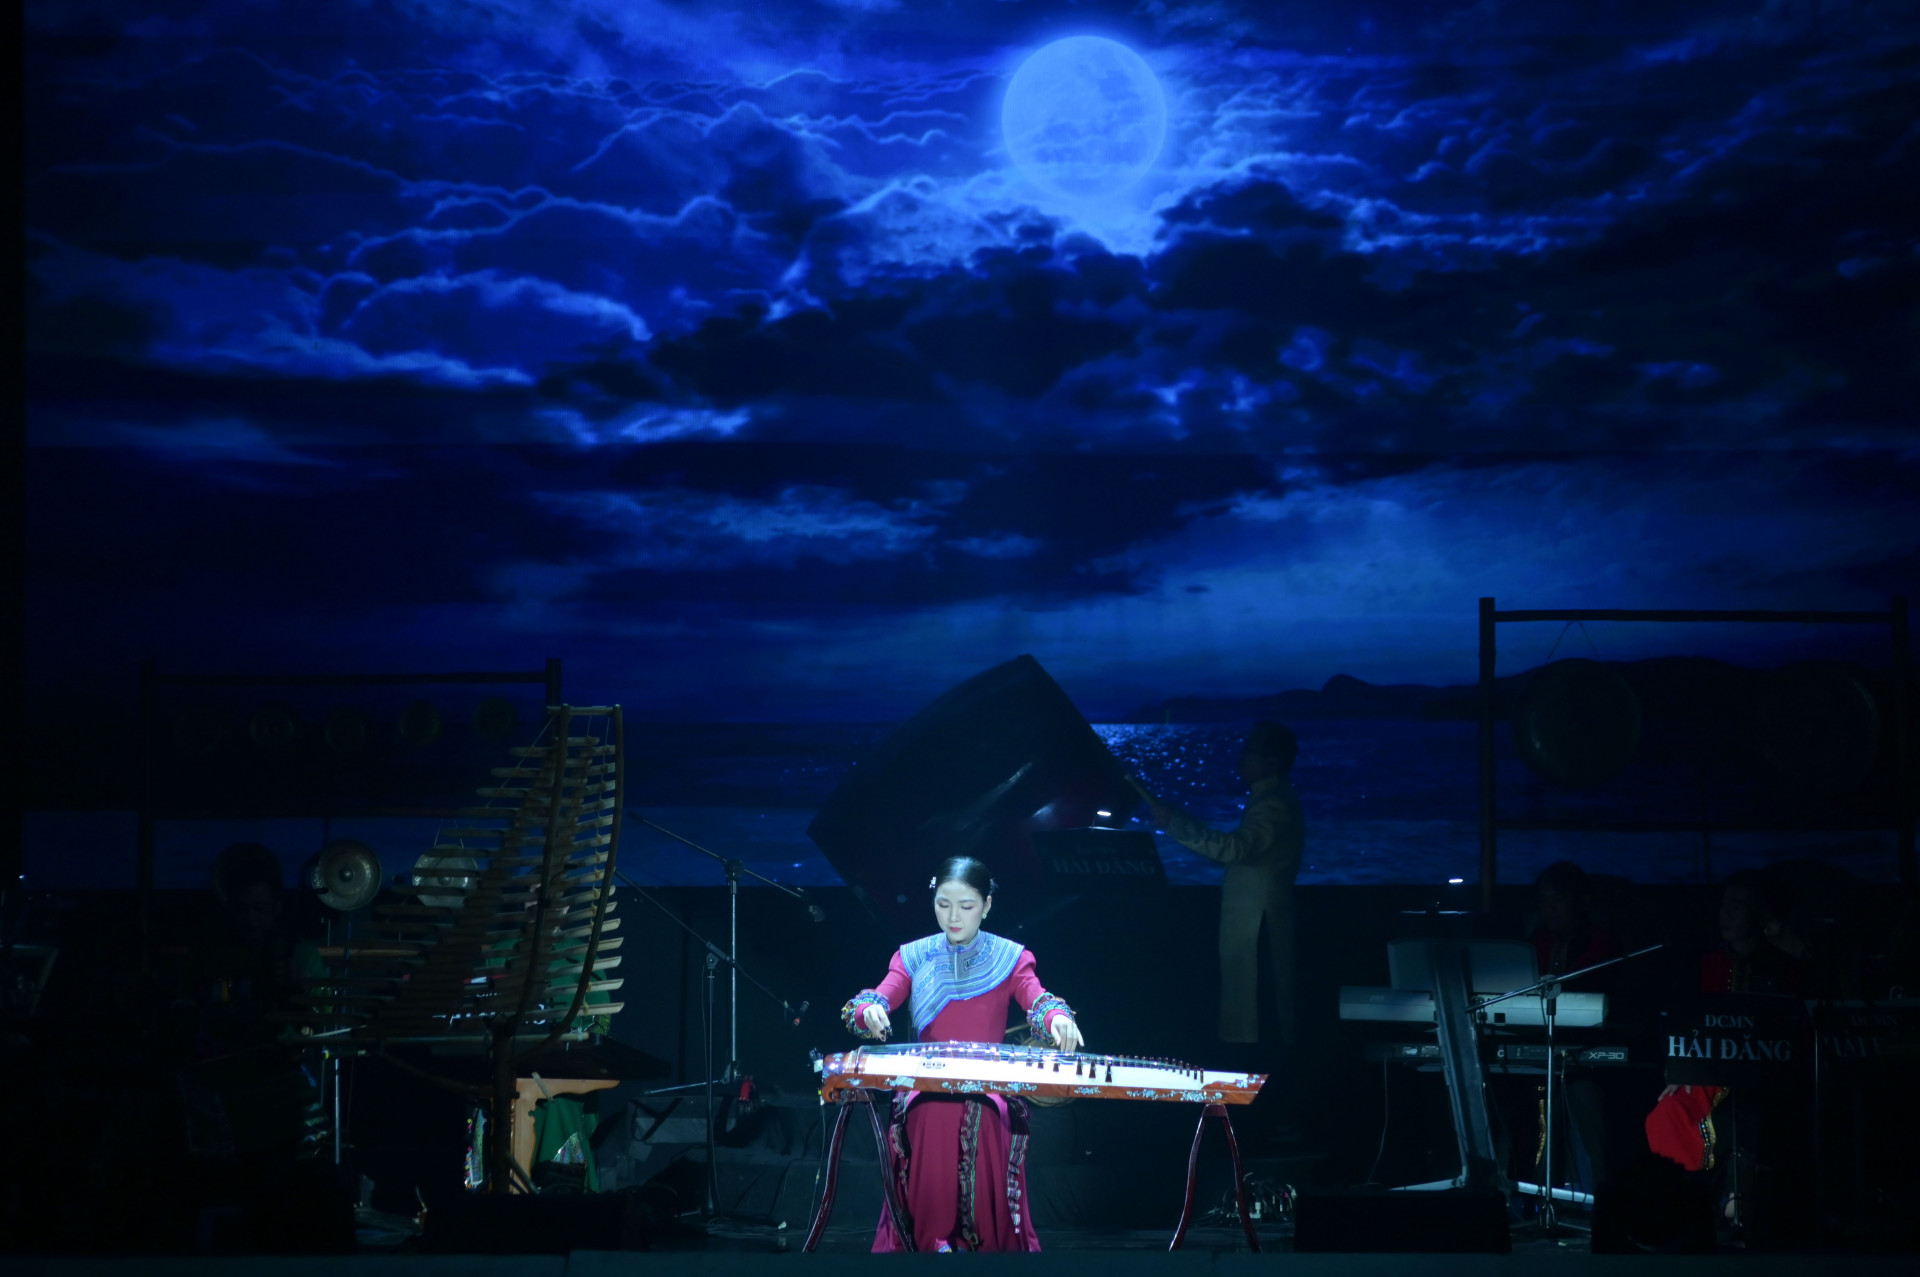 Tiết mục độc tấu đàn tranh Say trăng của nghệ sĩ Phương Linh và dàn nhạc Hải Đăng.